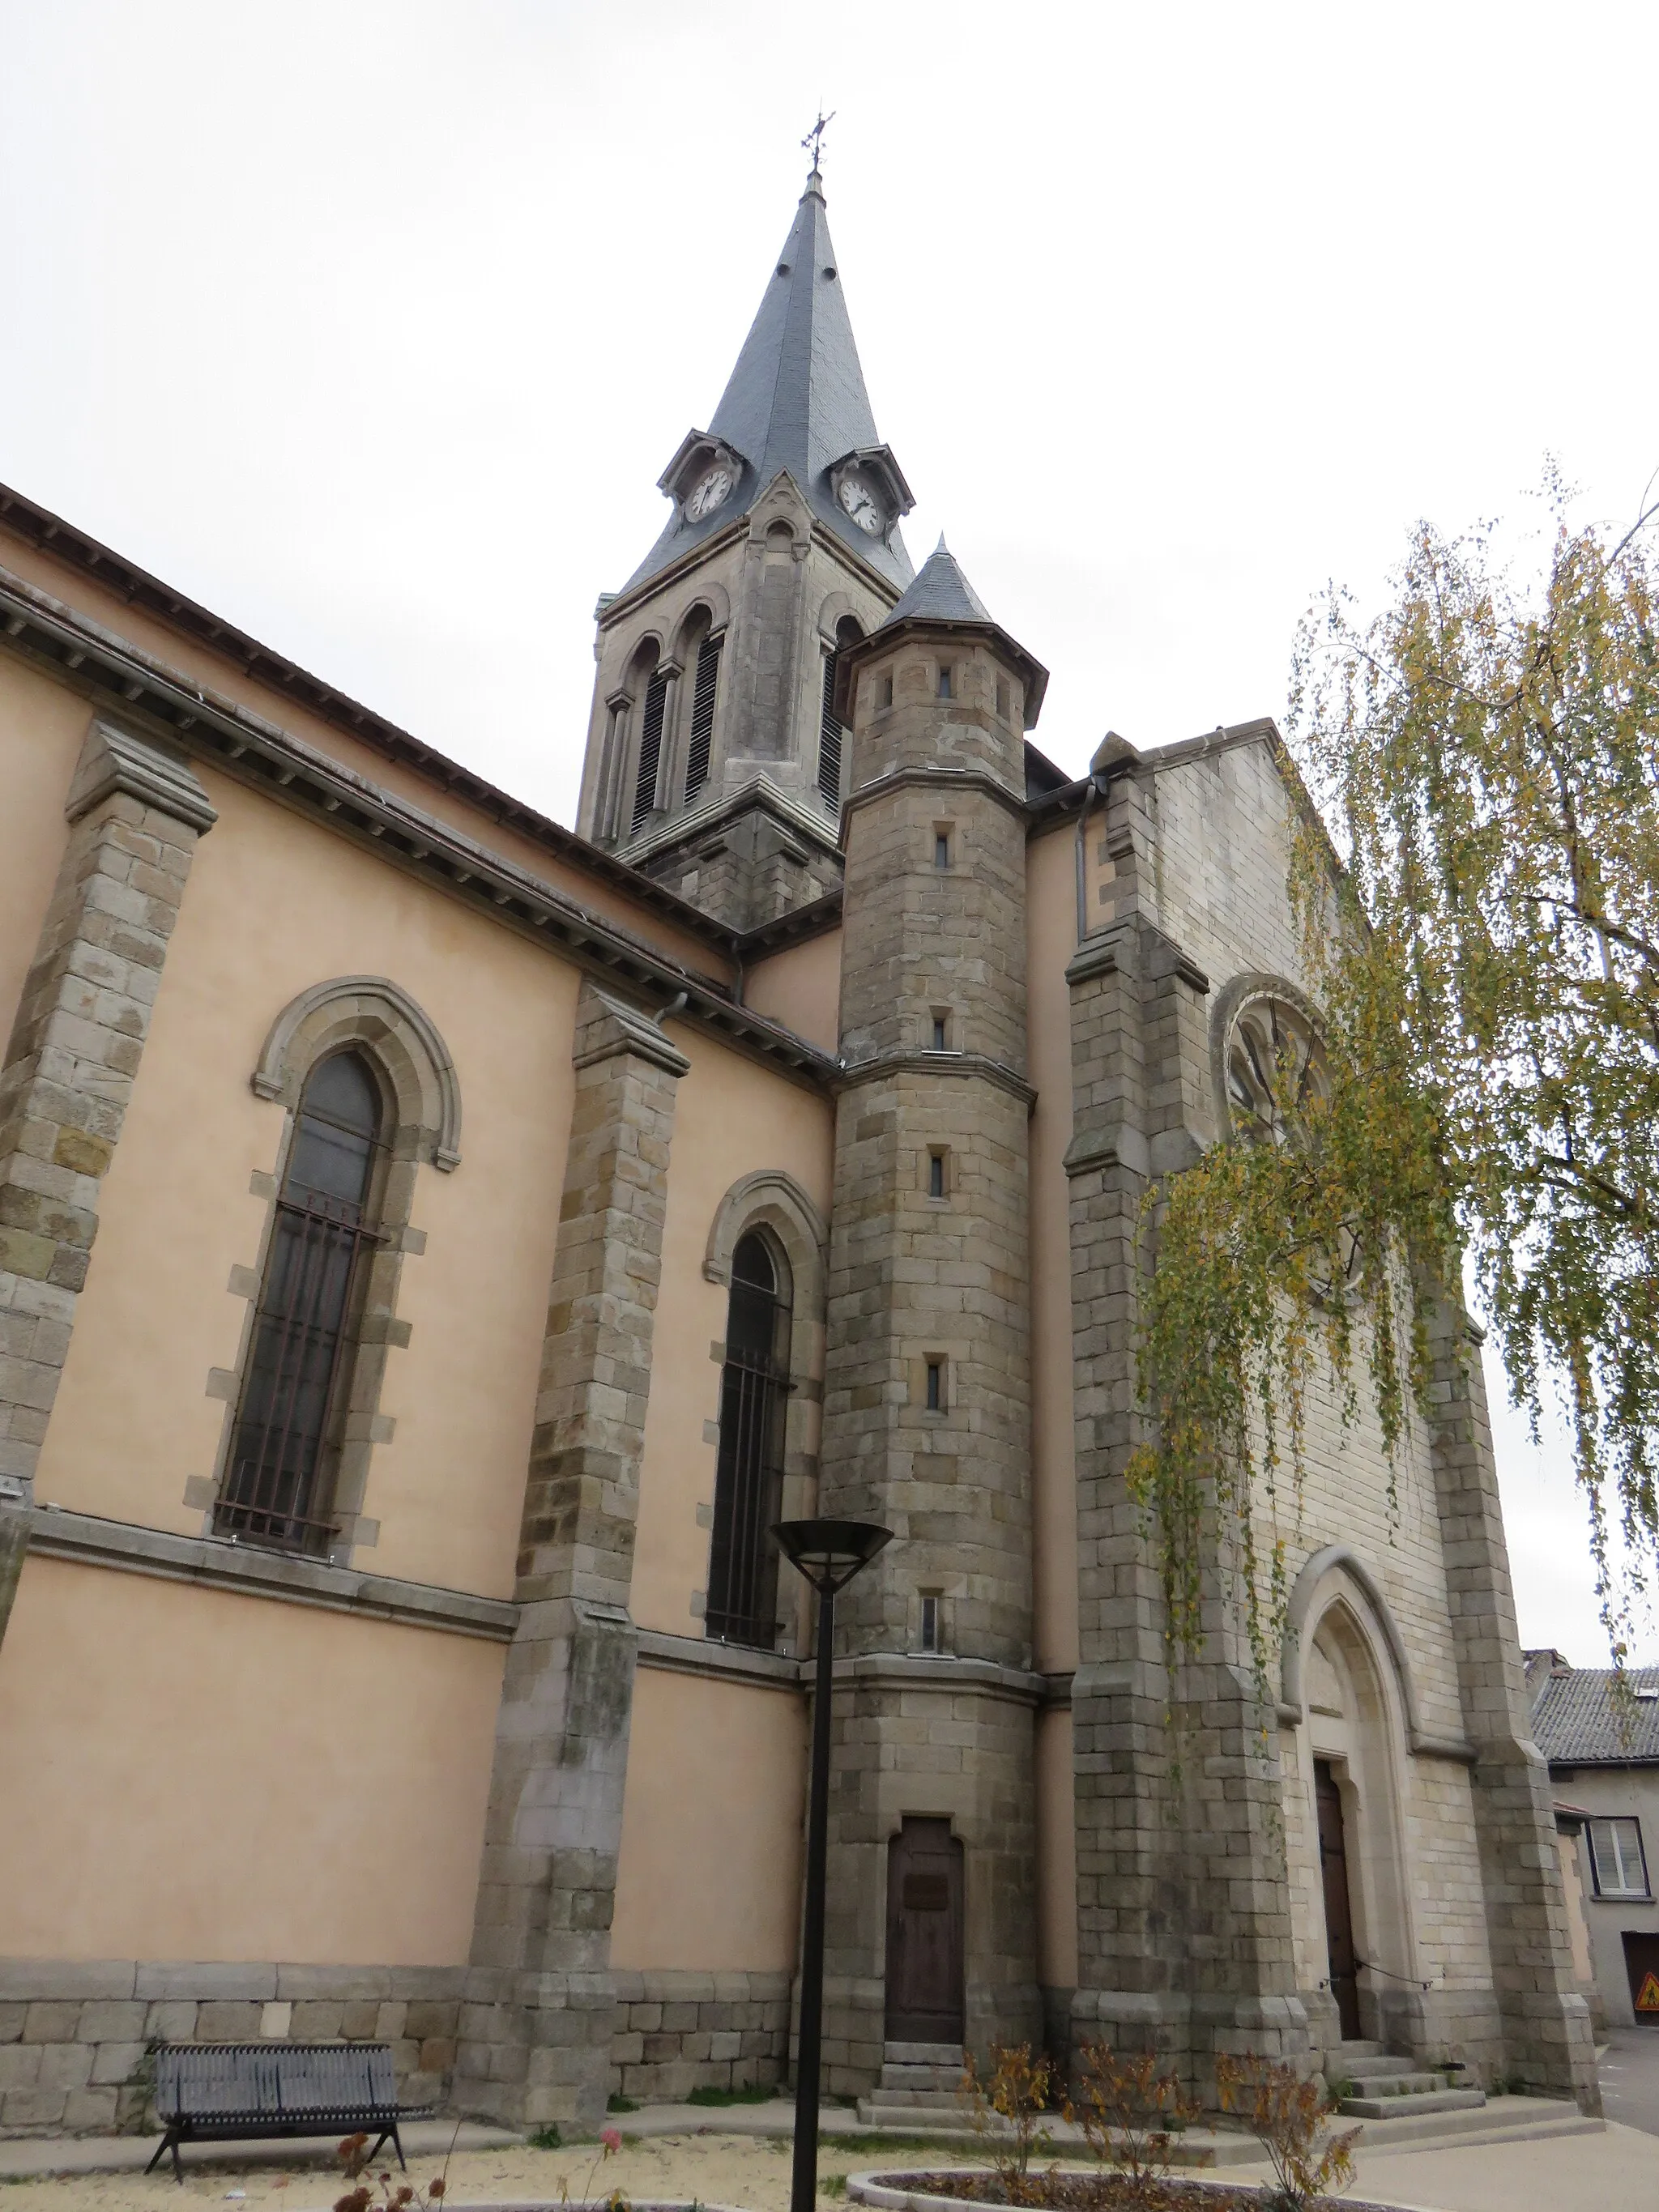 Photo showing: Clocher de l'église Saint-Clair de Brignais (Rhône, France).